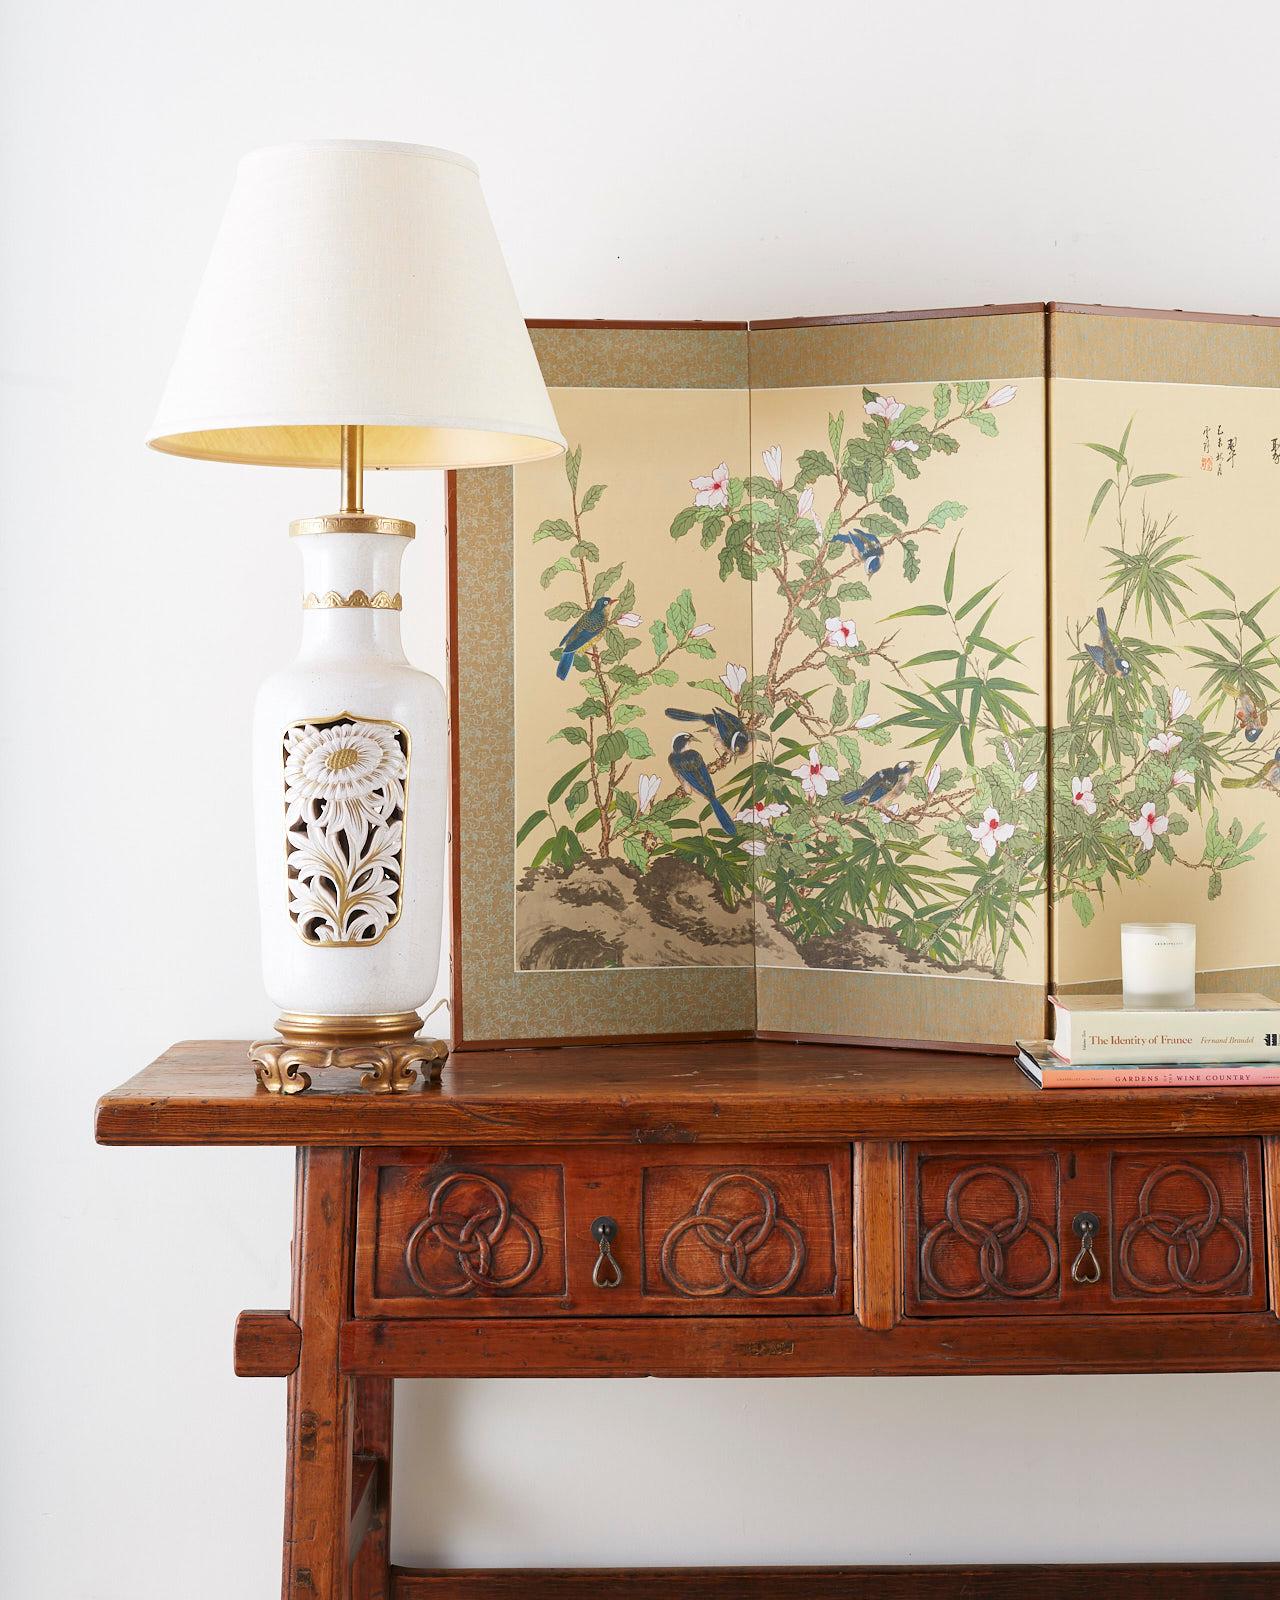 Grande lampe de table en forme de vase en céramique dorée par paquet, fabriquée par Marbro. Il s'agit d'un grand vase en céramique dont le corps est percé et décoré d'un motif floral sur chaque côté. Accentué avec de la dorure sur le col et la lèvre